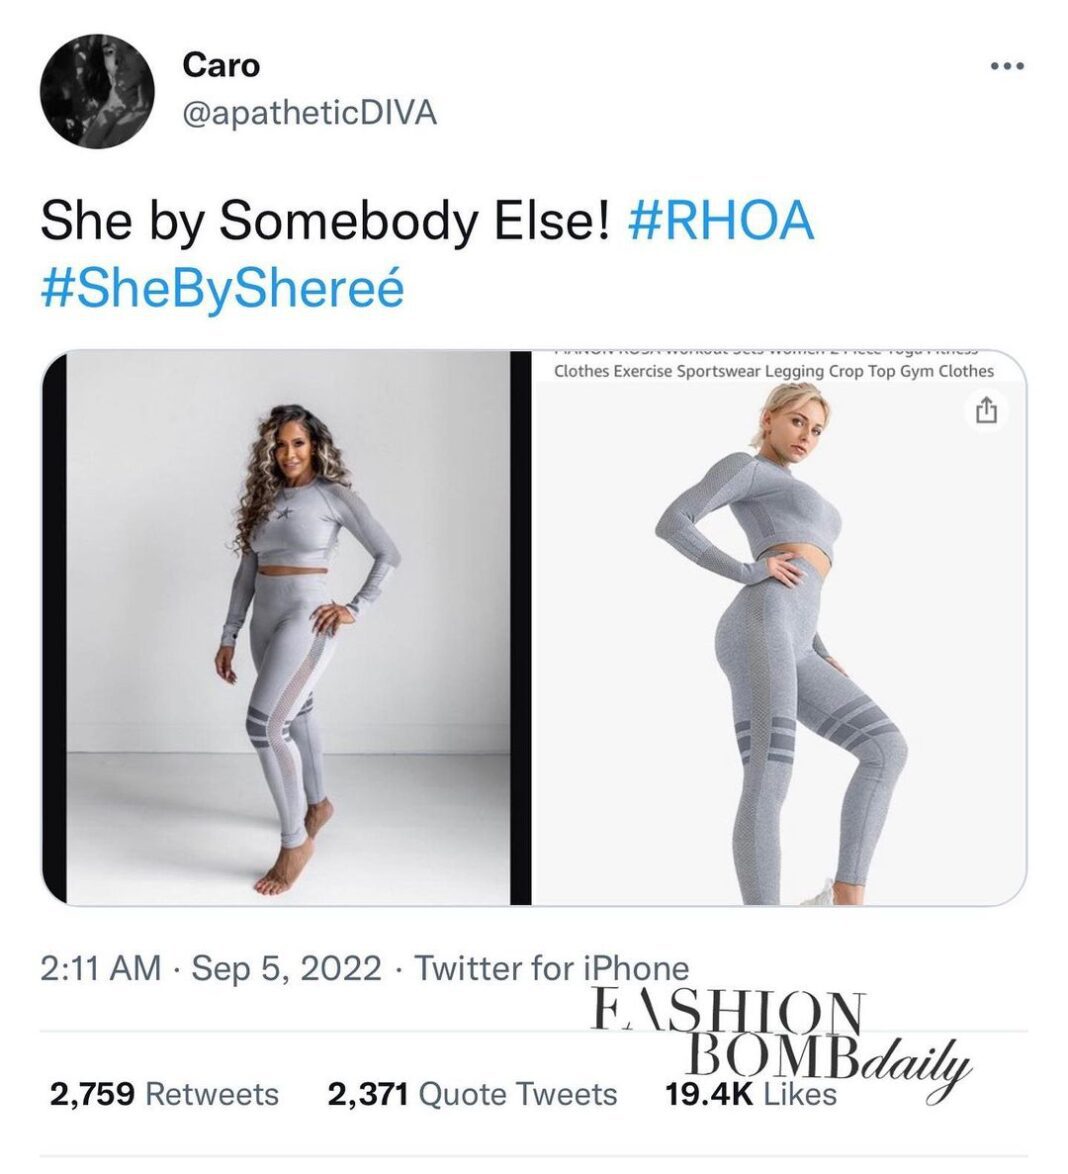 RHOA Fans Claim Shereé Whitfield’s She by Shereé Brand to be Amazon Dupes!